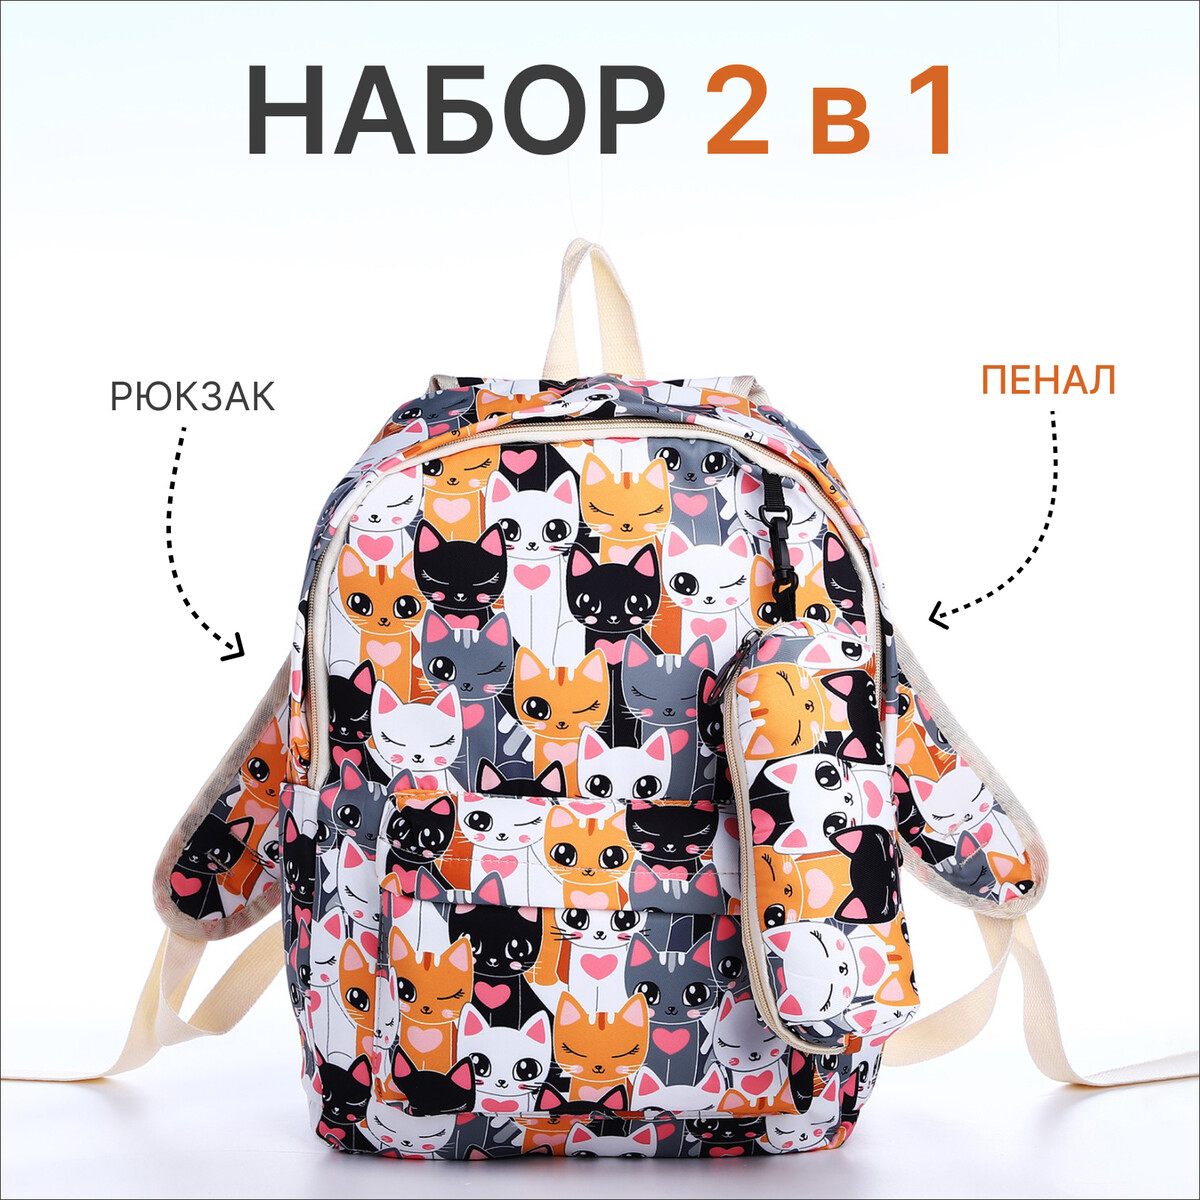 Рюкзак школьный из текстиля на молнии, 3 кармана, пенал, цвет разноцветный/оранжевый